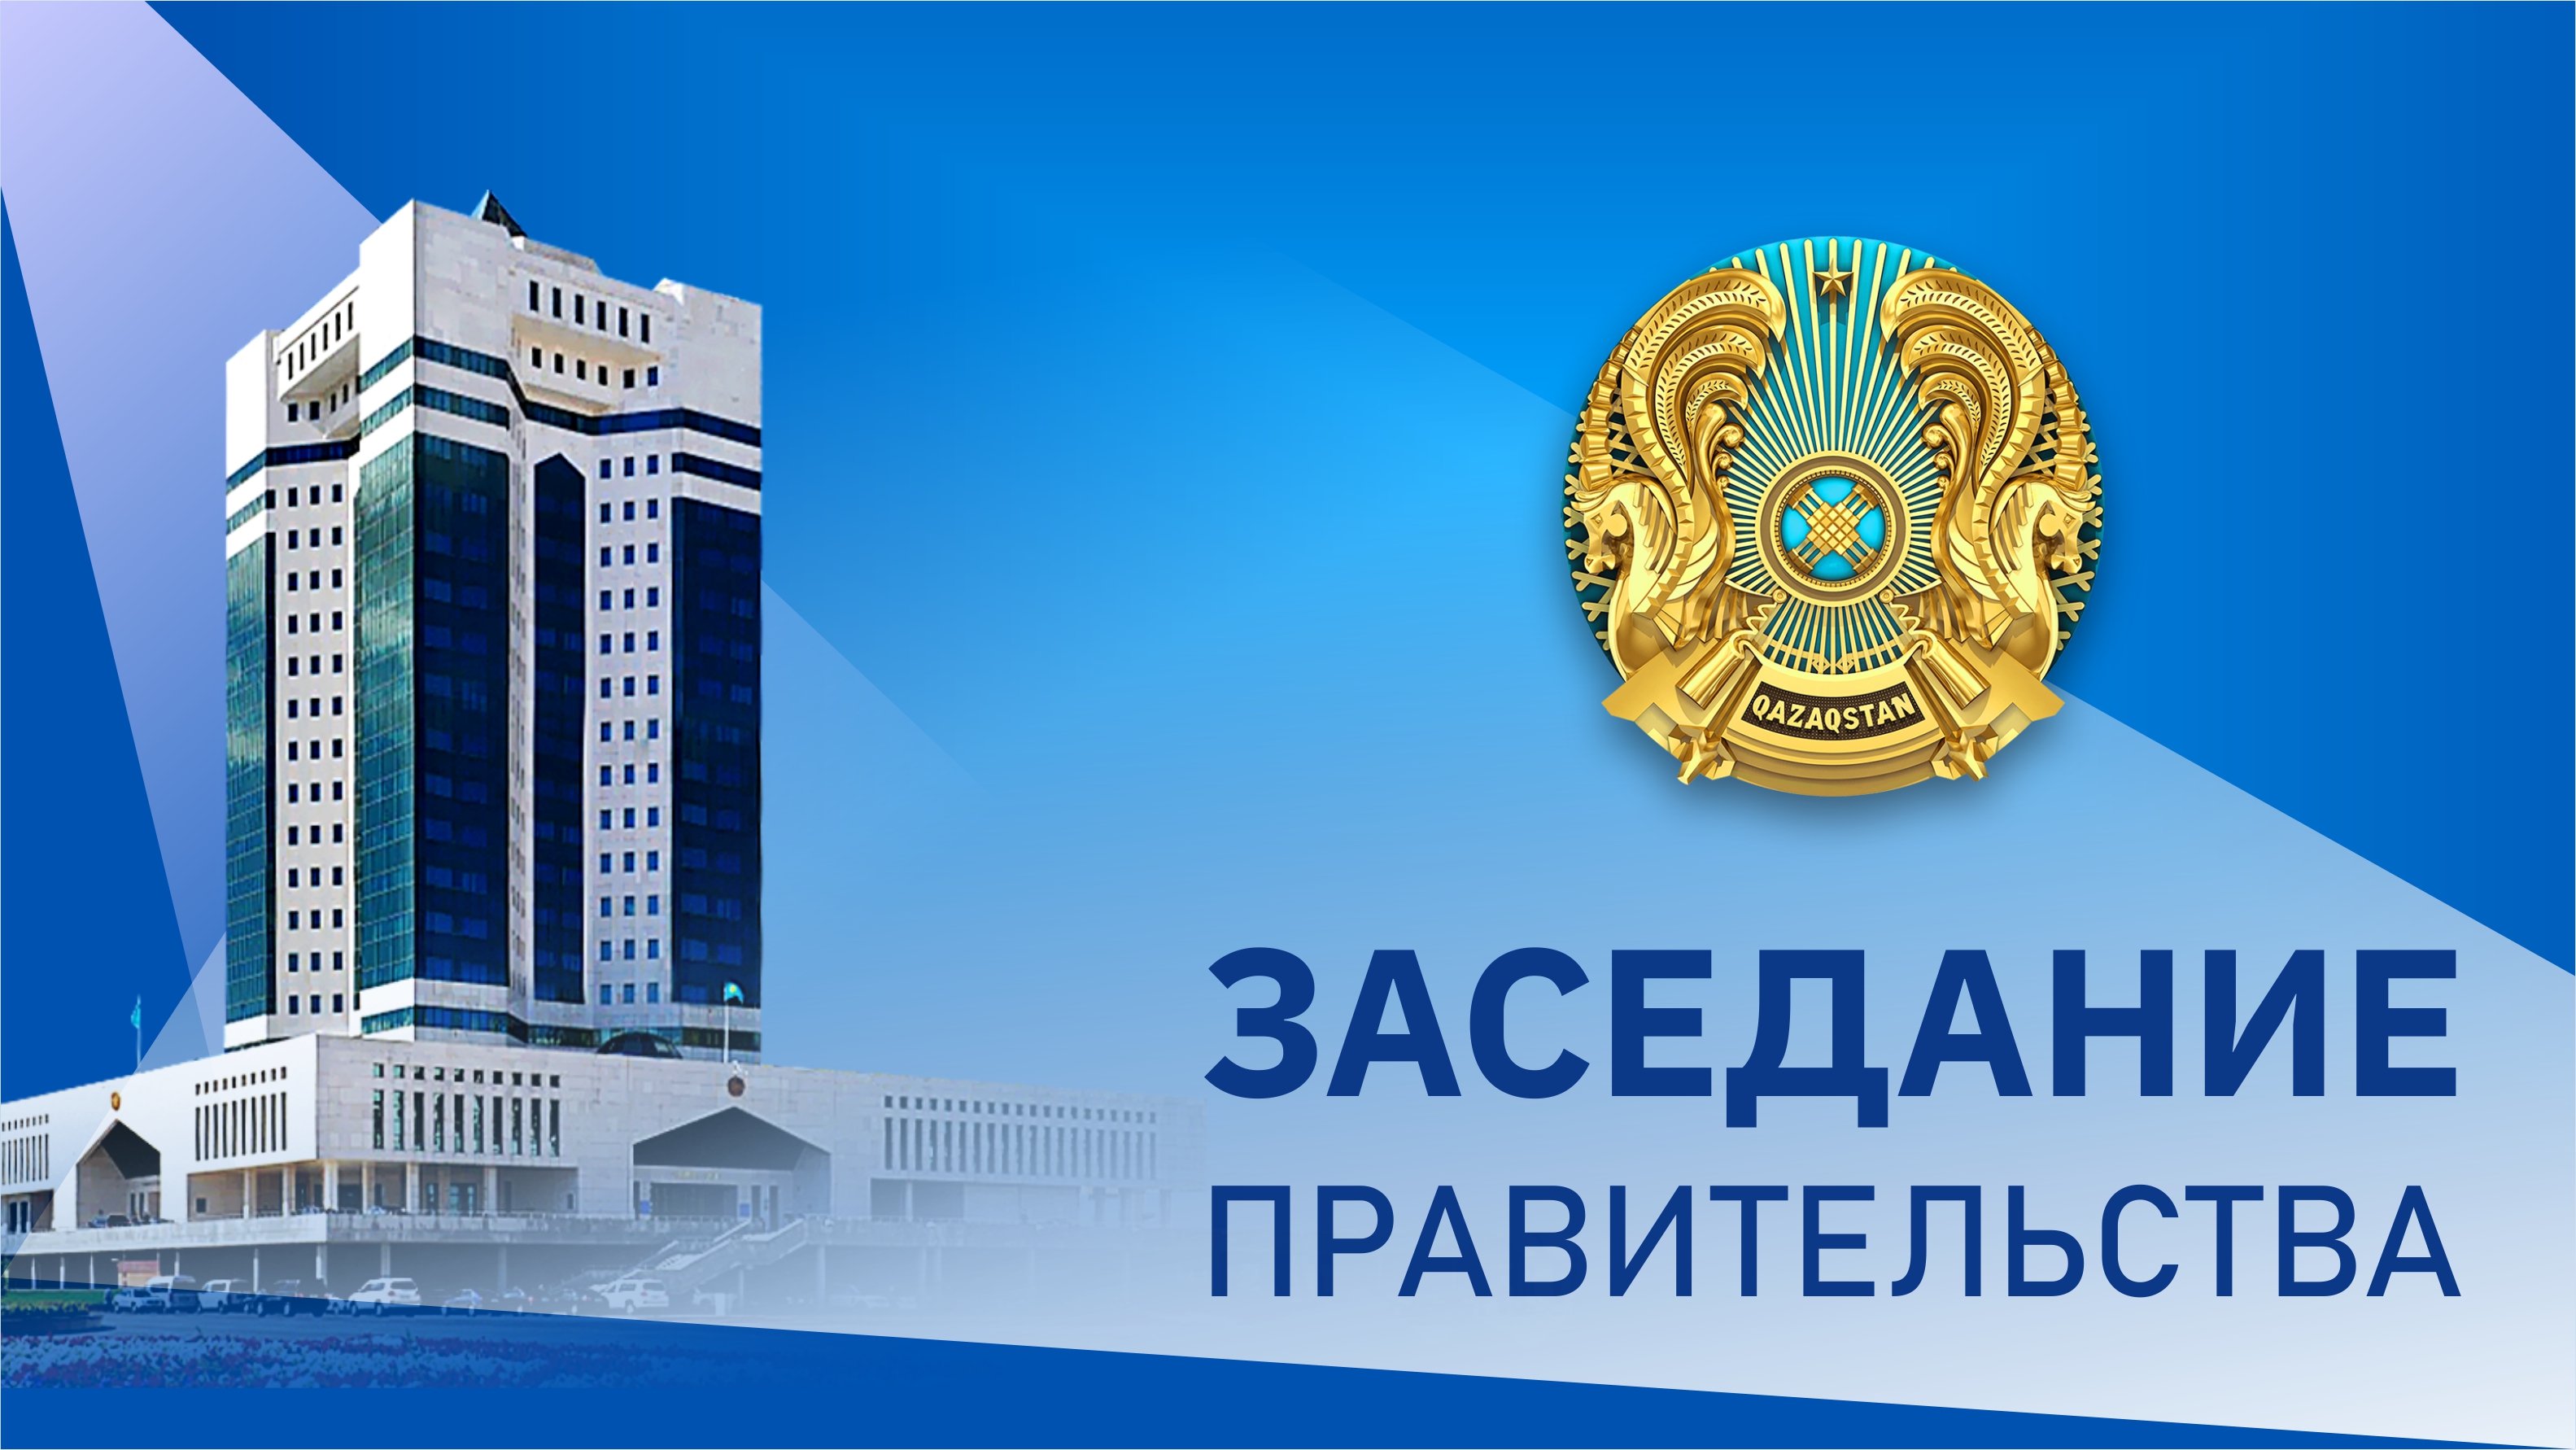 9 июня в Үкімет үйі состоится заседание Правительства Казахстана